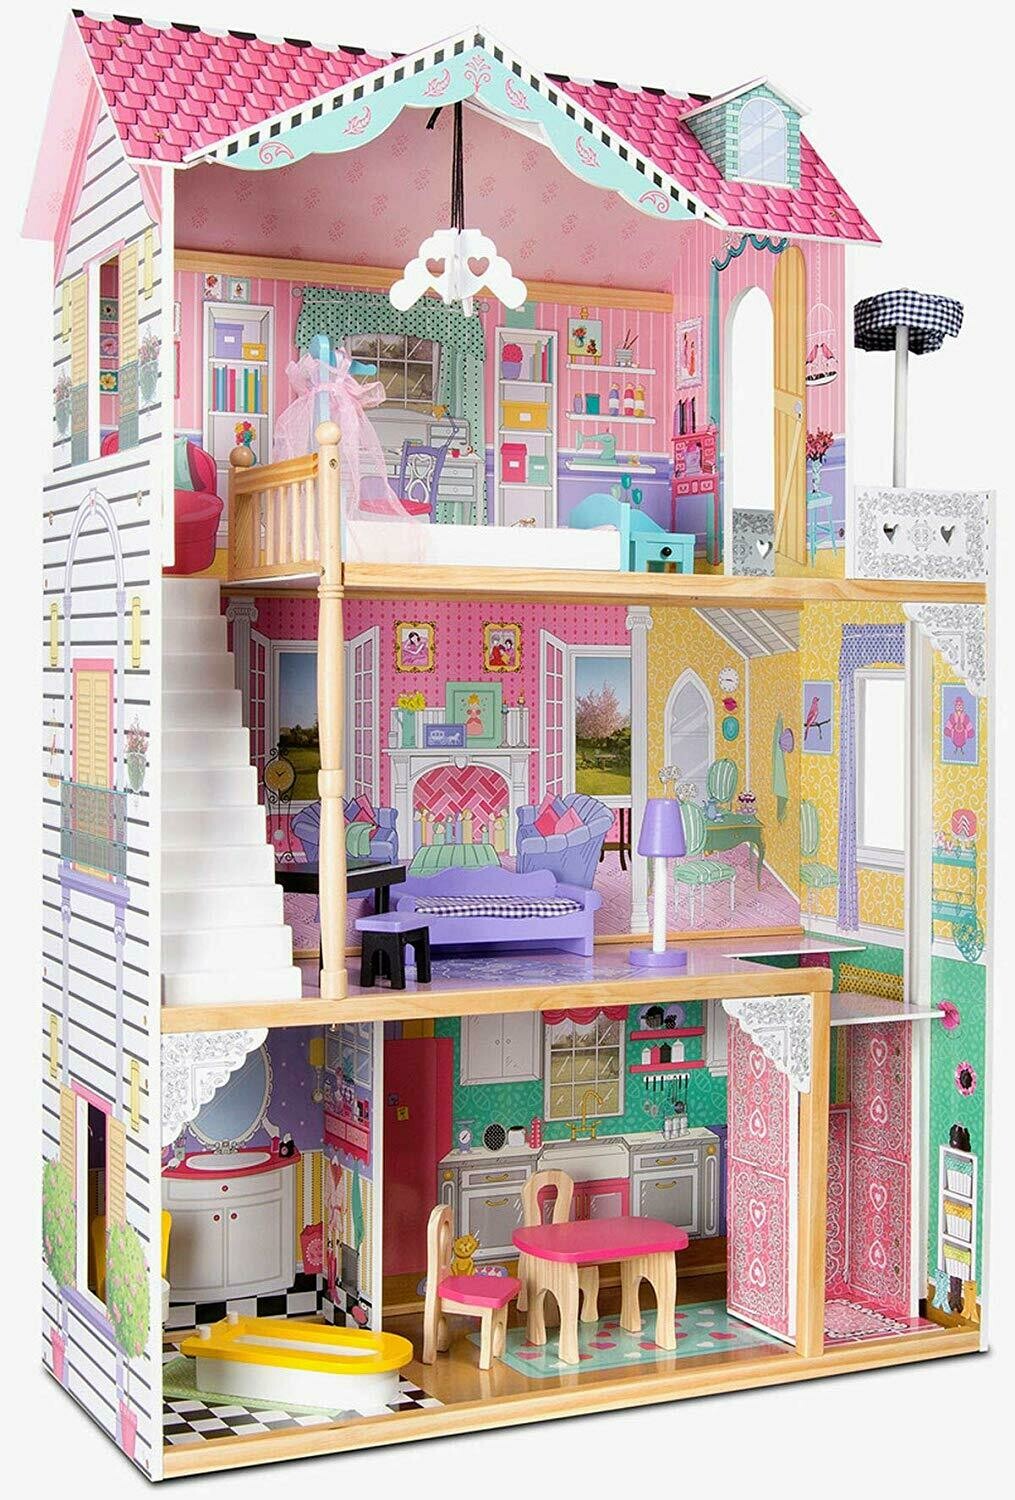 KidKraft 65934 Maison de poupées en bois Annabelle incluant accessoires et mobilier, 88 x 41 x 121cm, retrait magasin 1h, livraison sous 24/48h